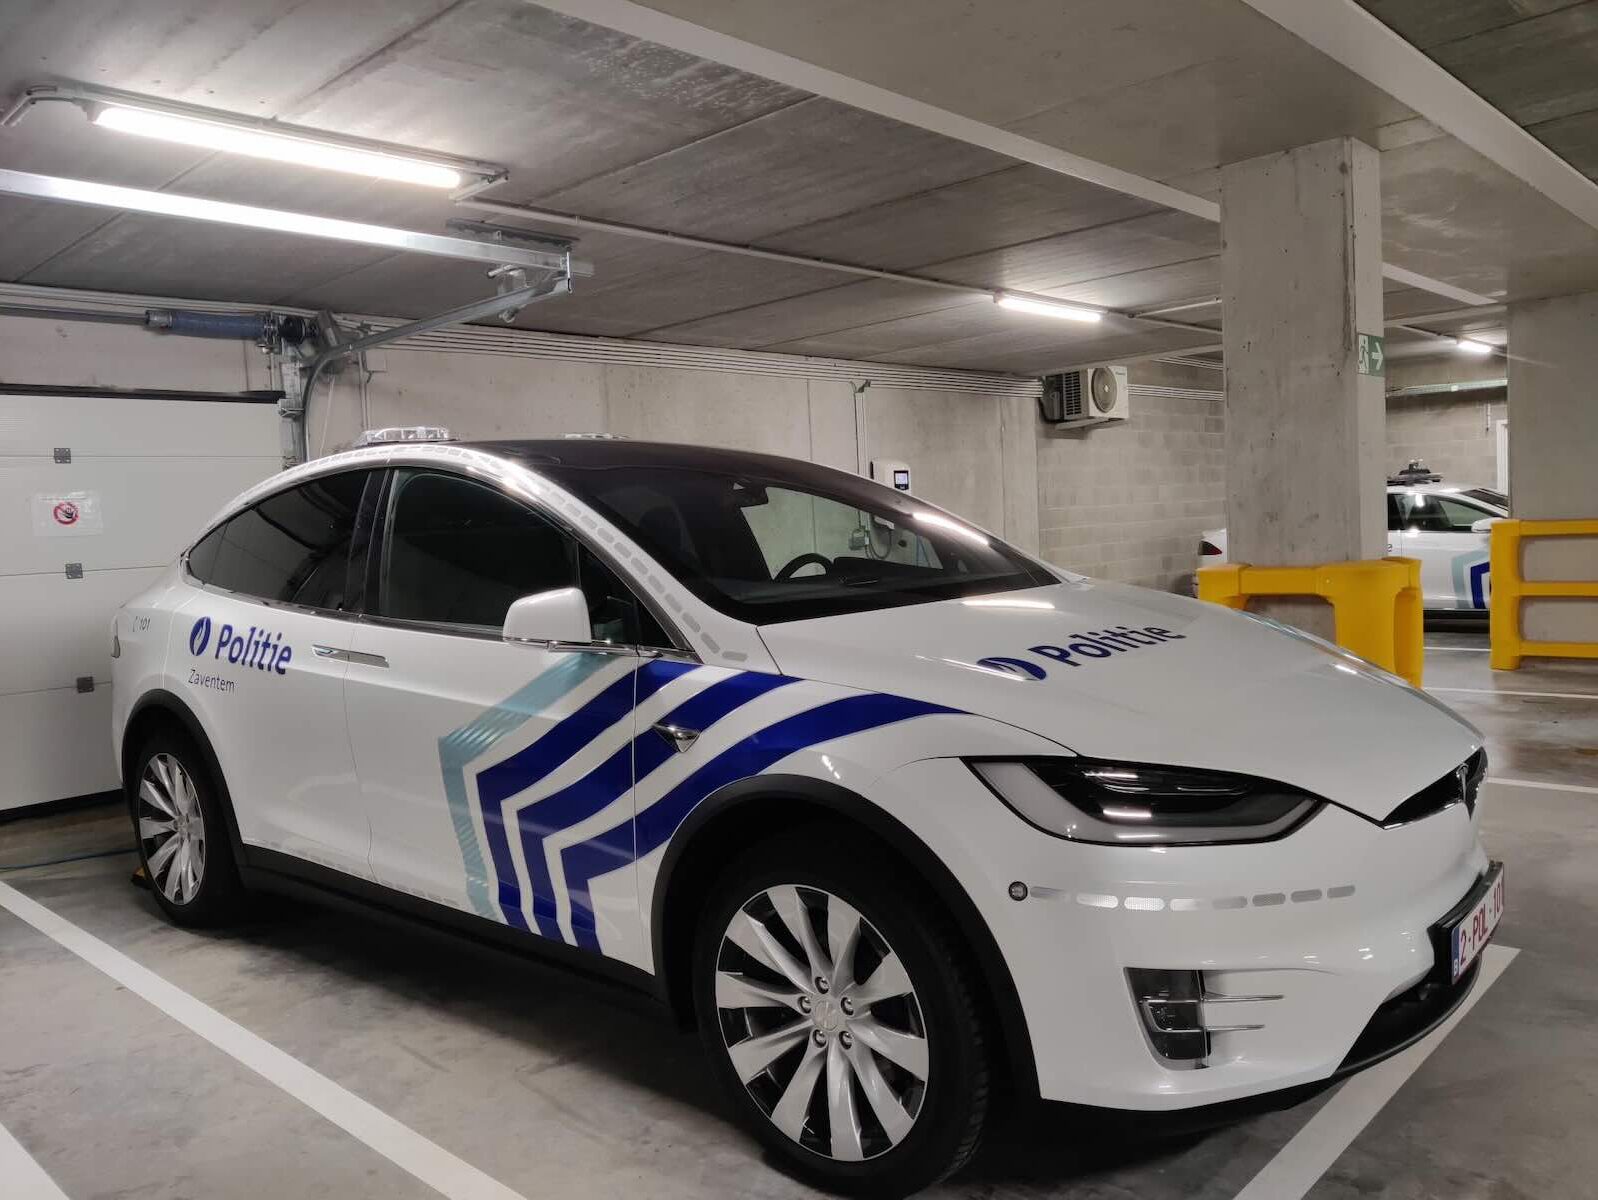 De bizarre reden waarom deze Belgische politie-Tesla al 4 jaar stilstaat